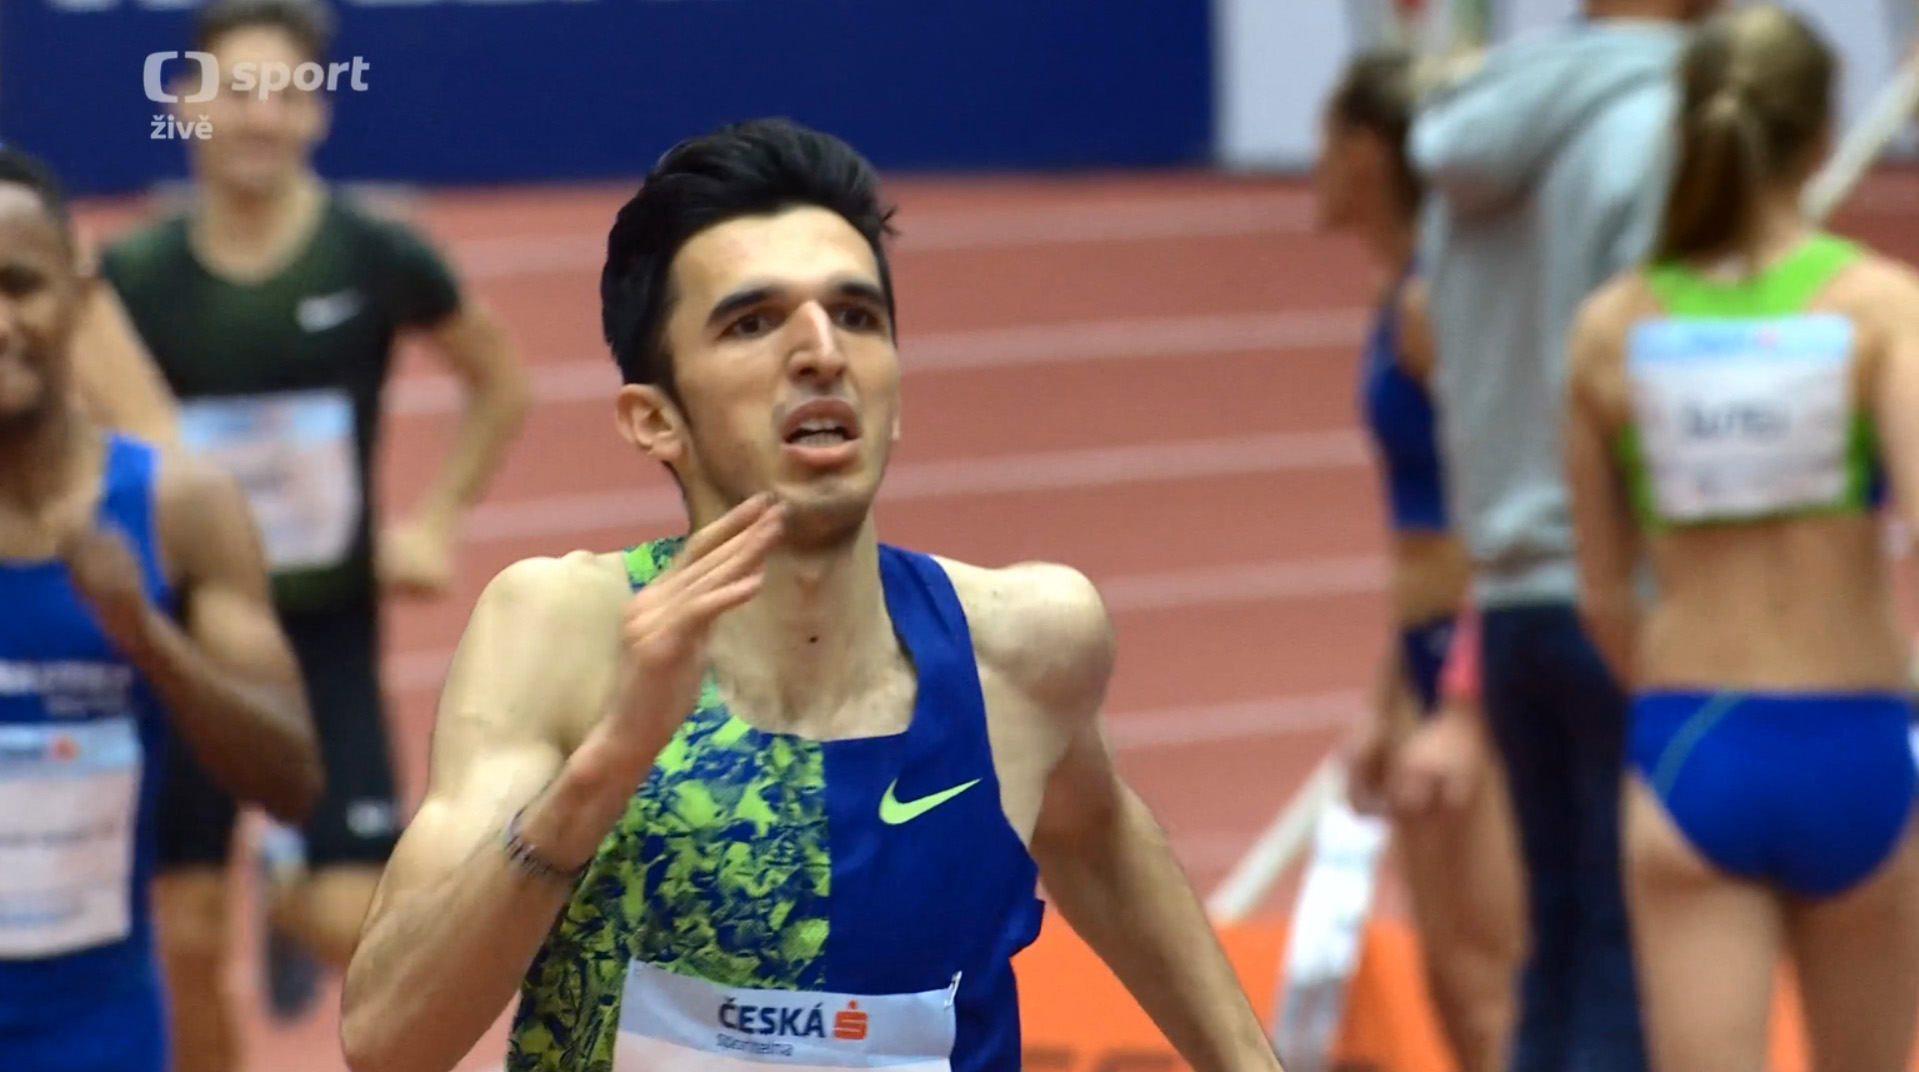 Elzan Bibić, Ostrava, dvoranski državni rekord 1500m